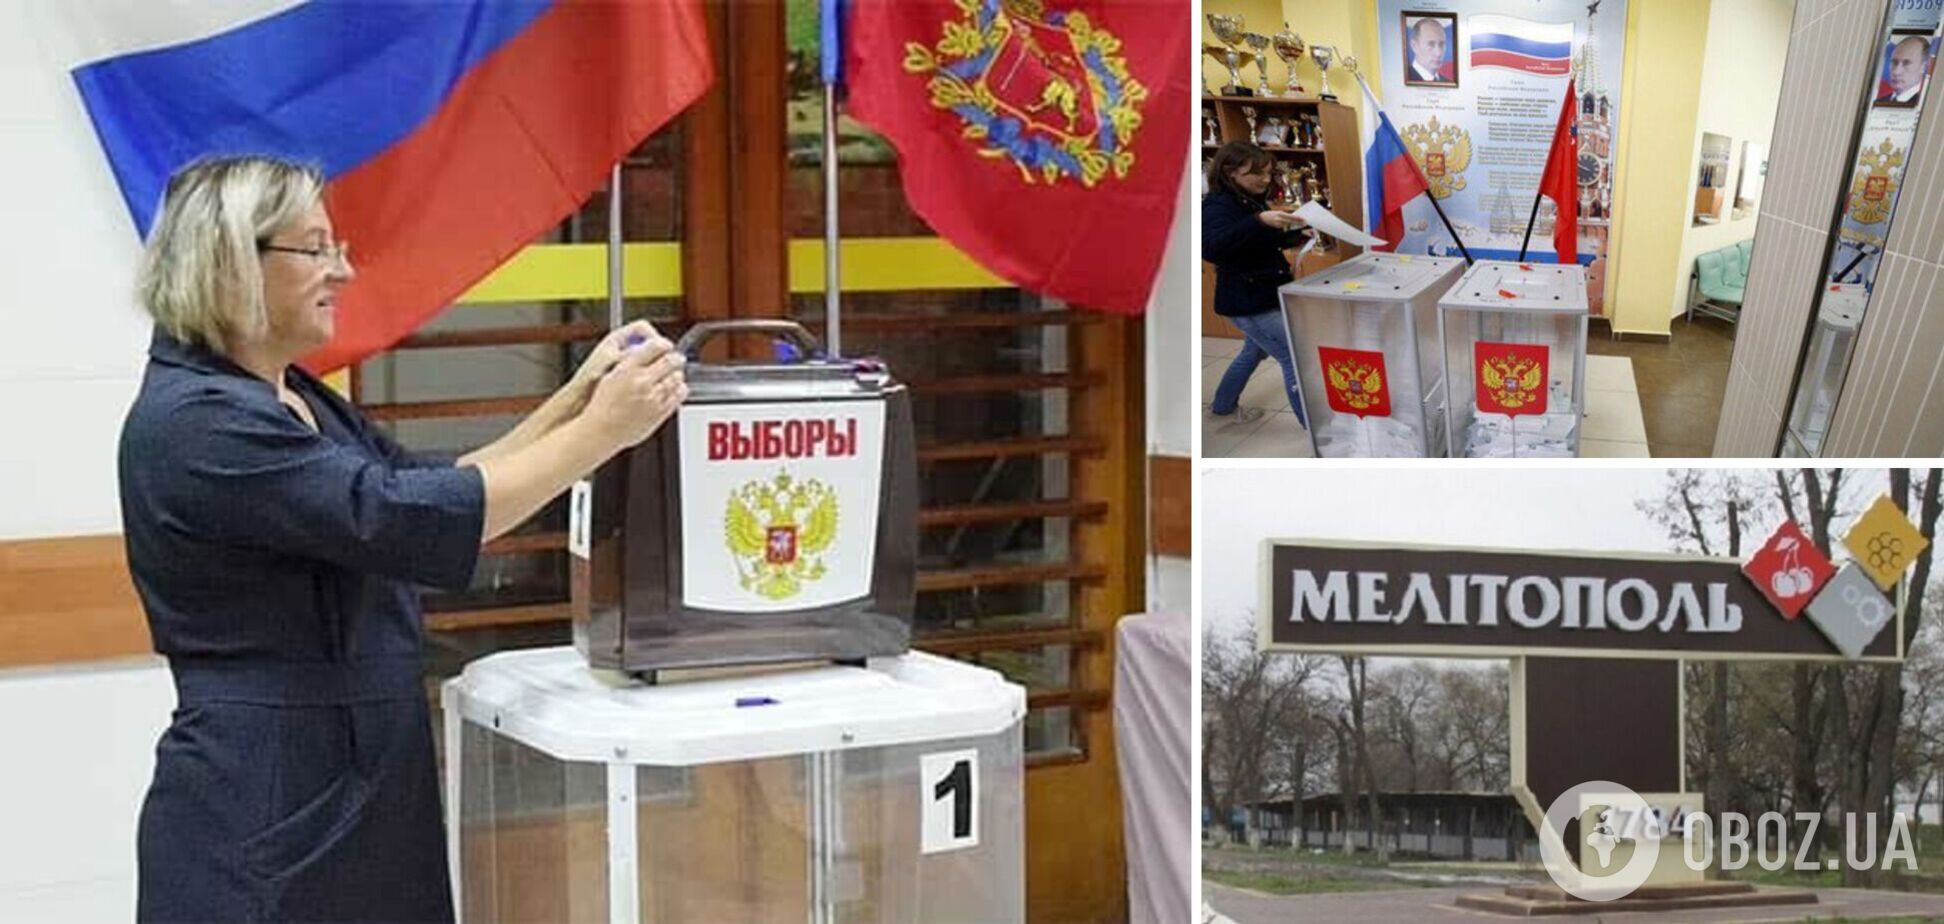 Голосувати можна і з українським паспортом, і з російським: у Мелітополі псевдовибори дійшли до абсурду